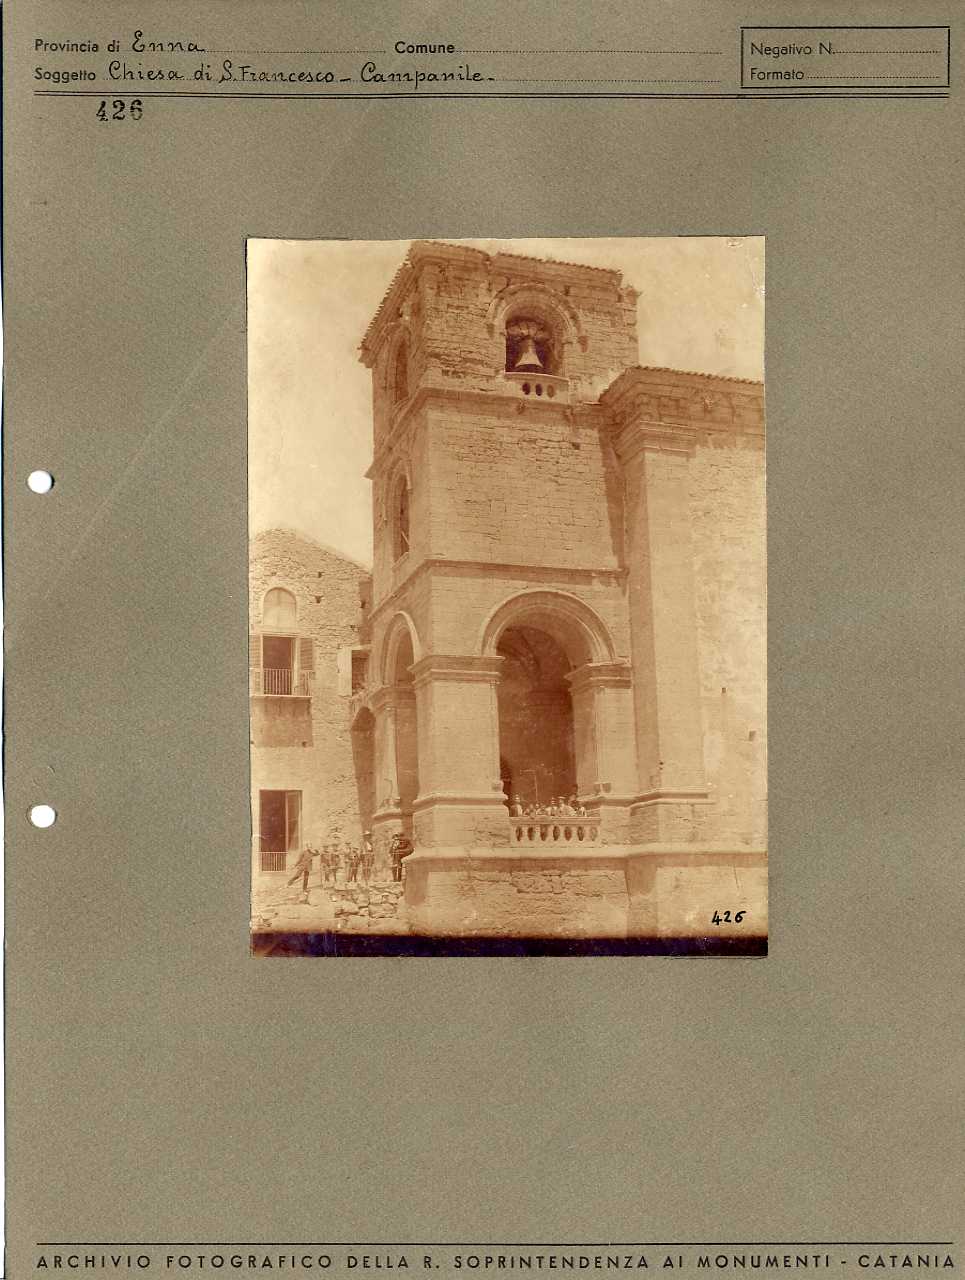 Sicilia - Enna - Architettura religiosa - Chiesa di San Francesco d'Assisi- campanile (positivo, elemento-parte componente, scheda di supporto) di Anonimo <1901-1950> (prima metà XX)